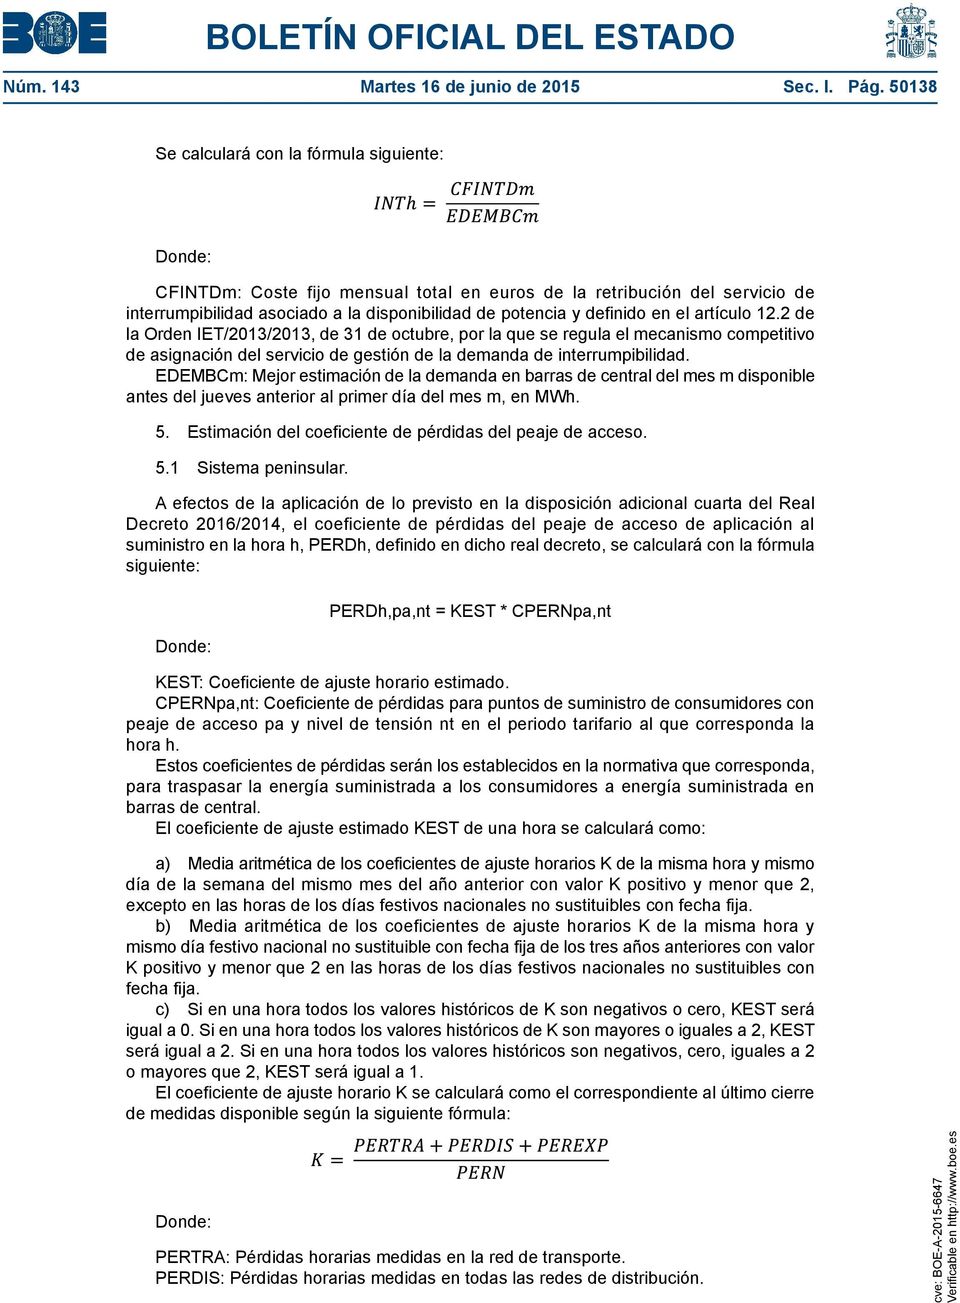 artículo 12.2 de la Orden IET/2013/2013, de 31 de octubre, por la que se regula el mecanismo competitivo de asignación del servicio de gestión de la demanda de interrumpibilidad.